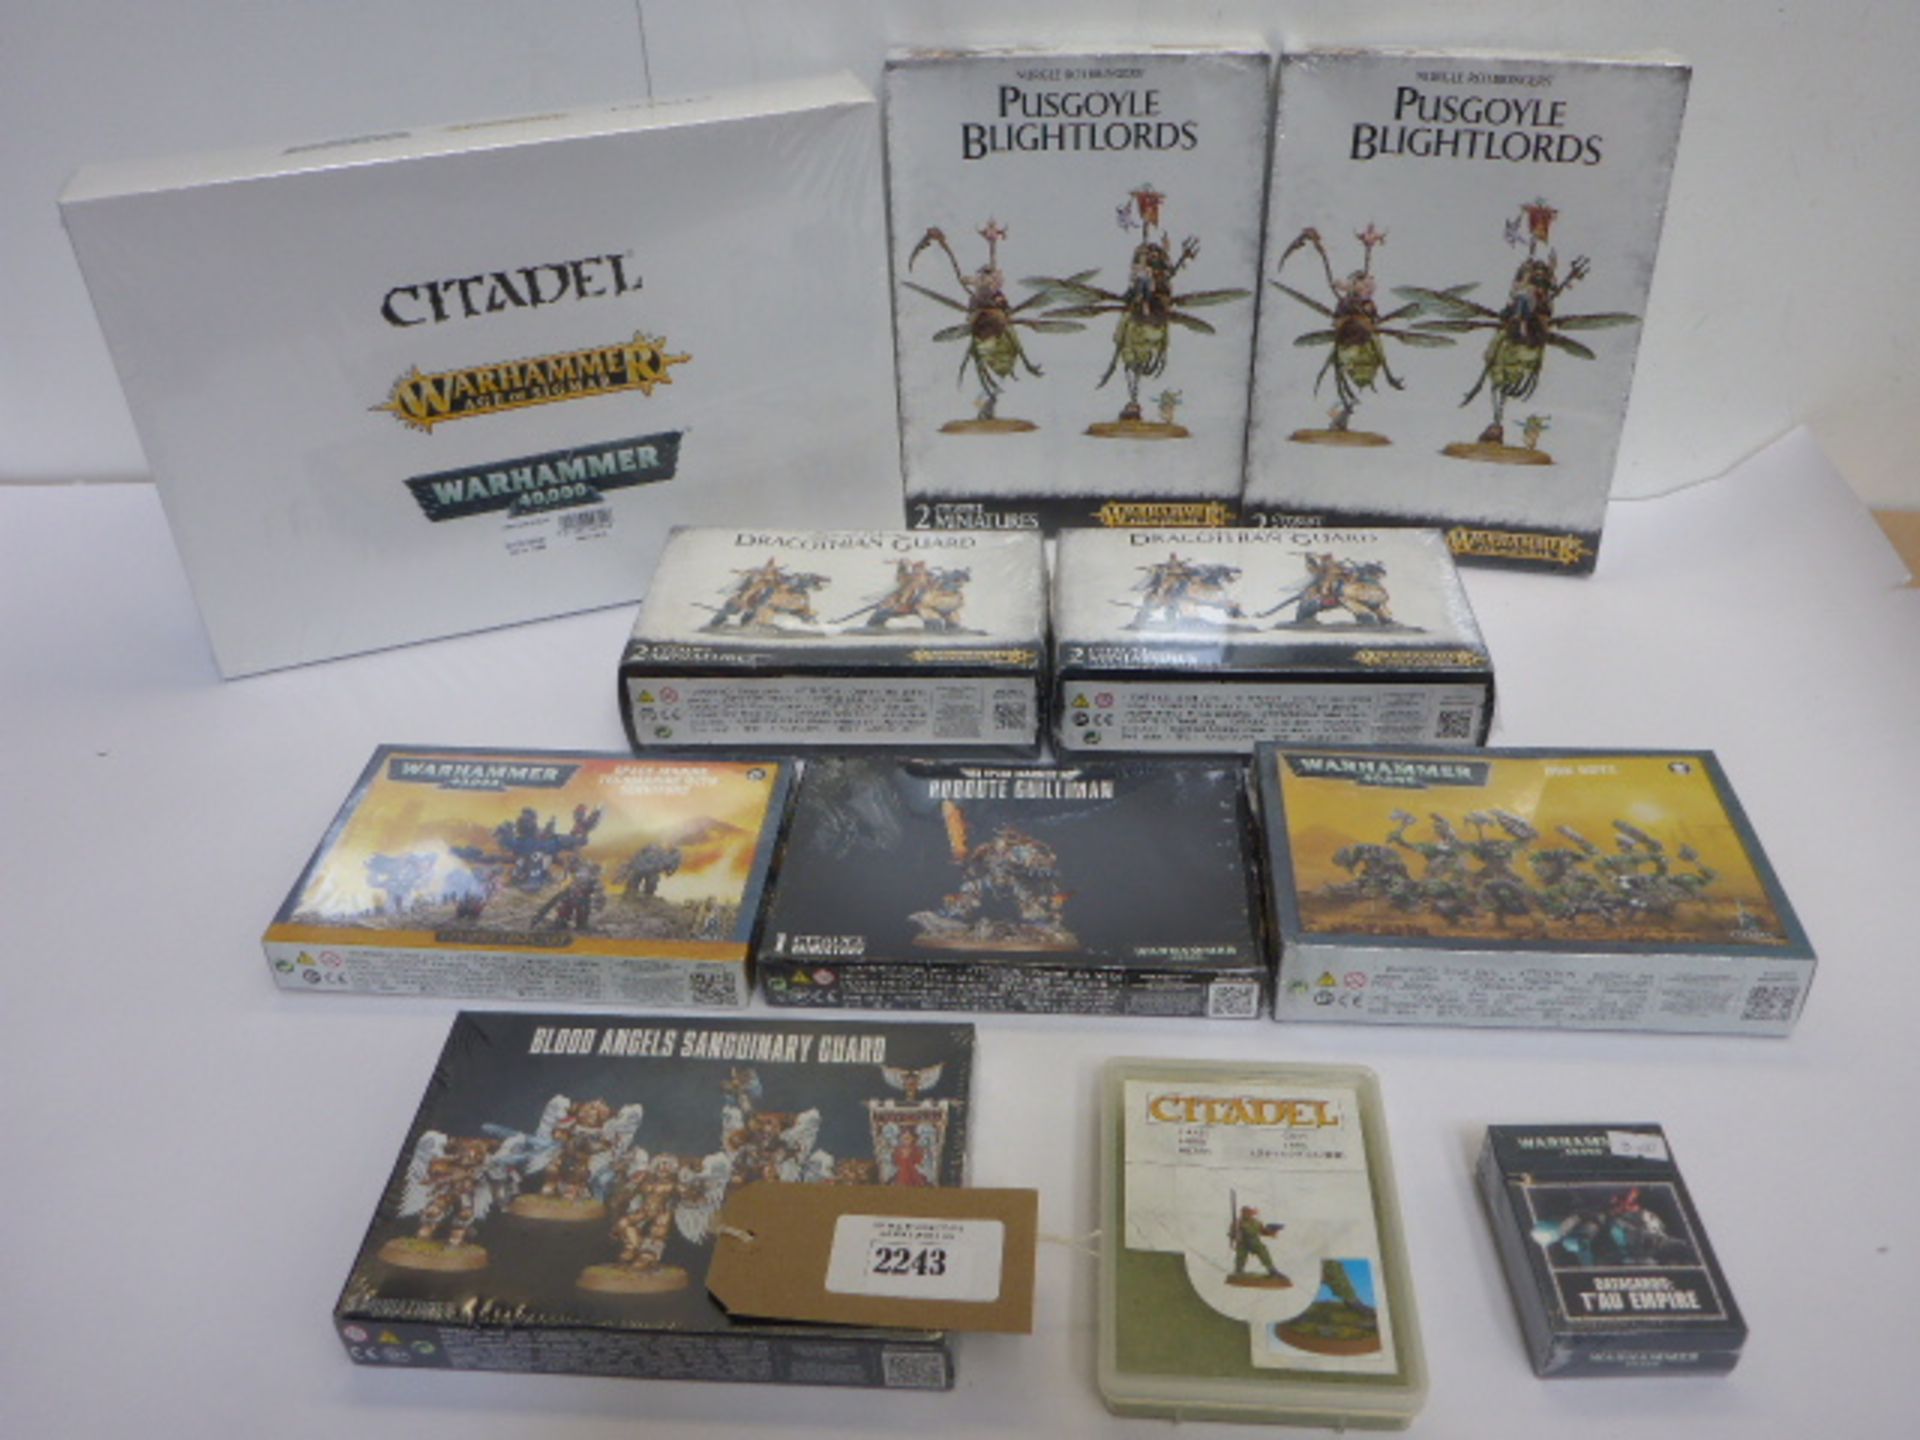 Bag containing 9 Citadel/Warhammer 40k model kits (all sealed), Citadel Grass & Warhammer tactical